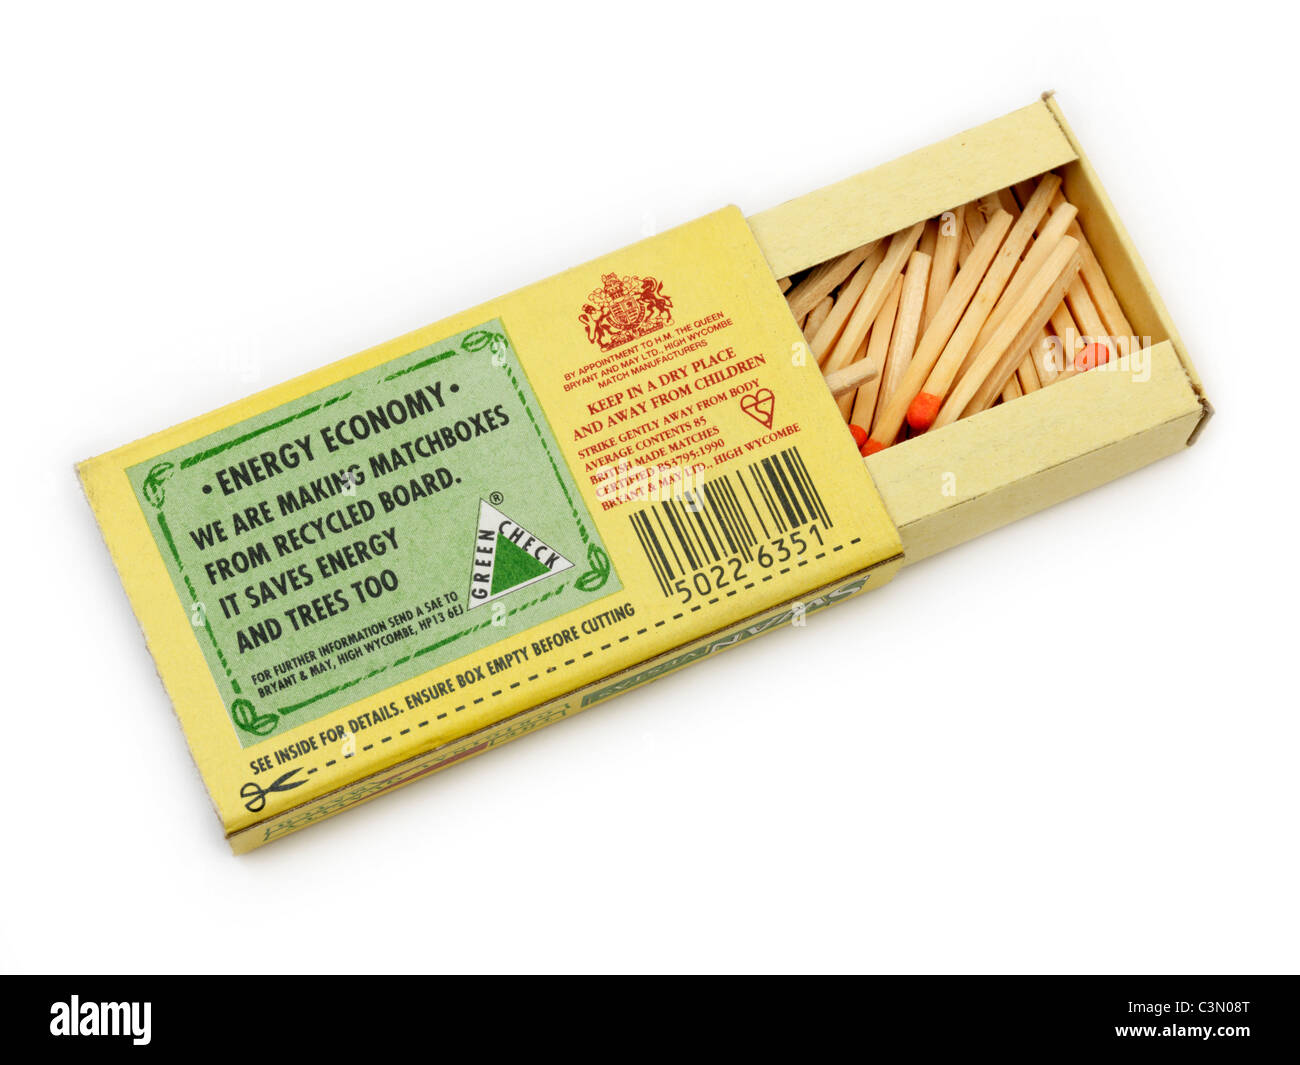 Una caja de fósforos con fósforos Etiqueta visible mostrando Matchbox está hecha de cartón reciclado Foto de stock